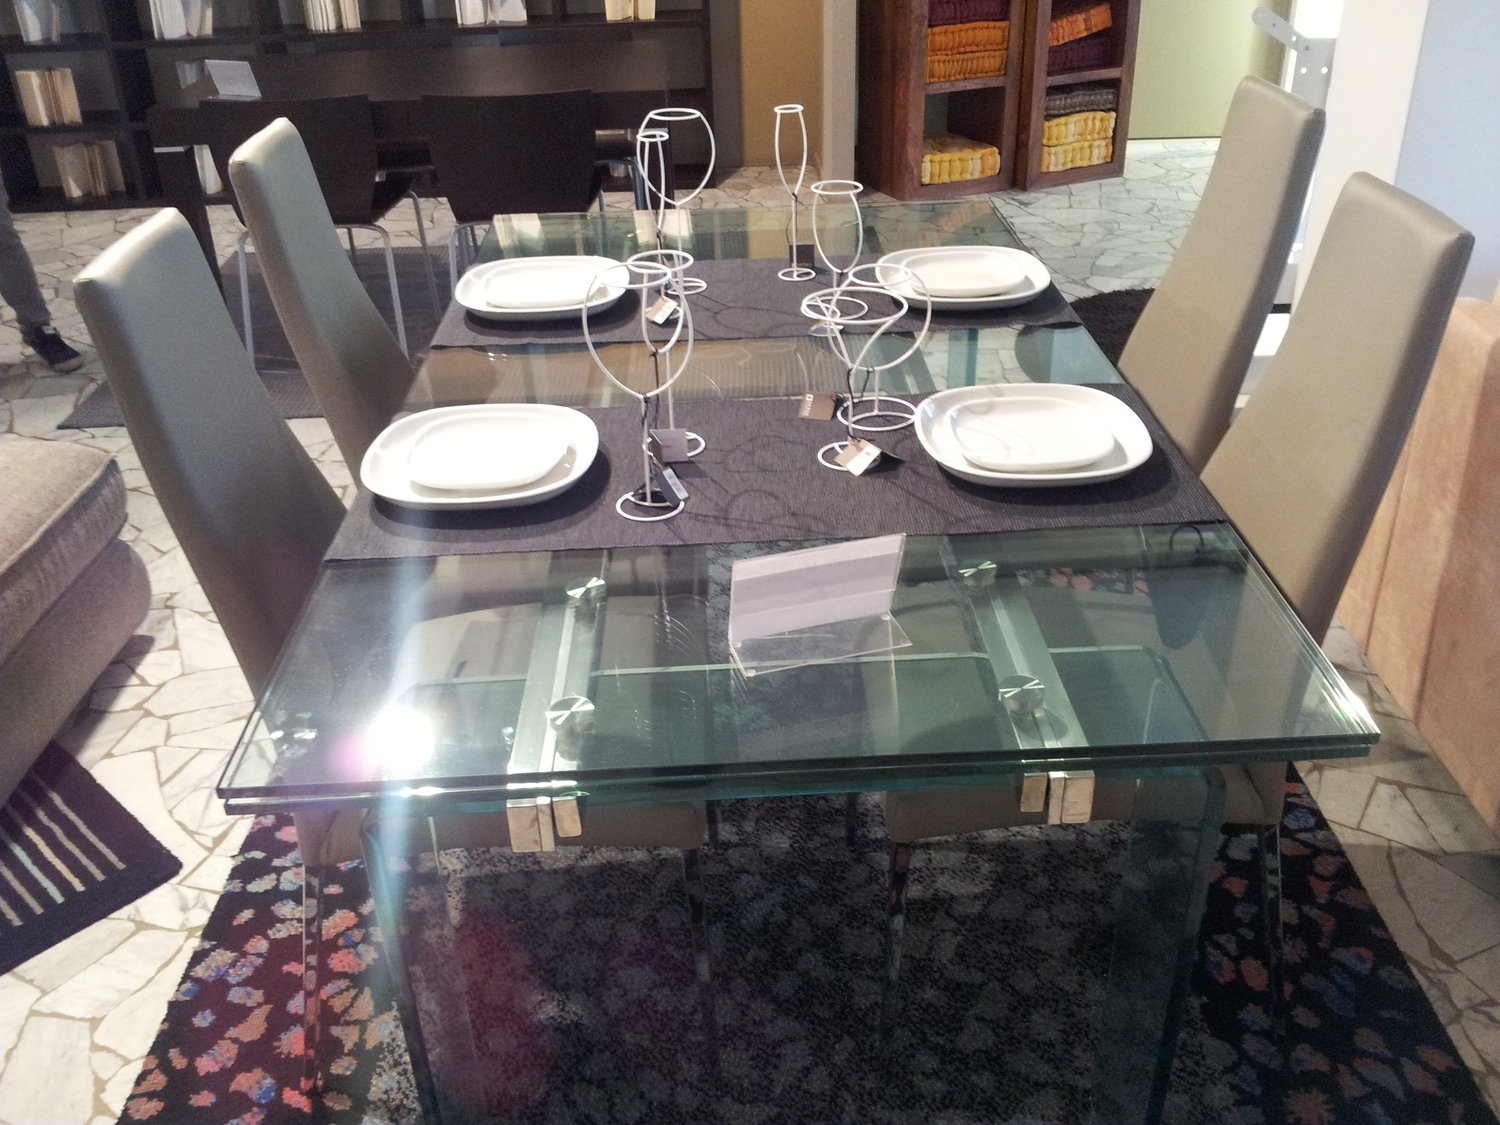 Tavolo cristallo allungabile tavoli a prezzi scontati for Tavoli allungabili in vetro prezzi